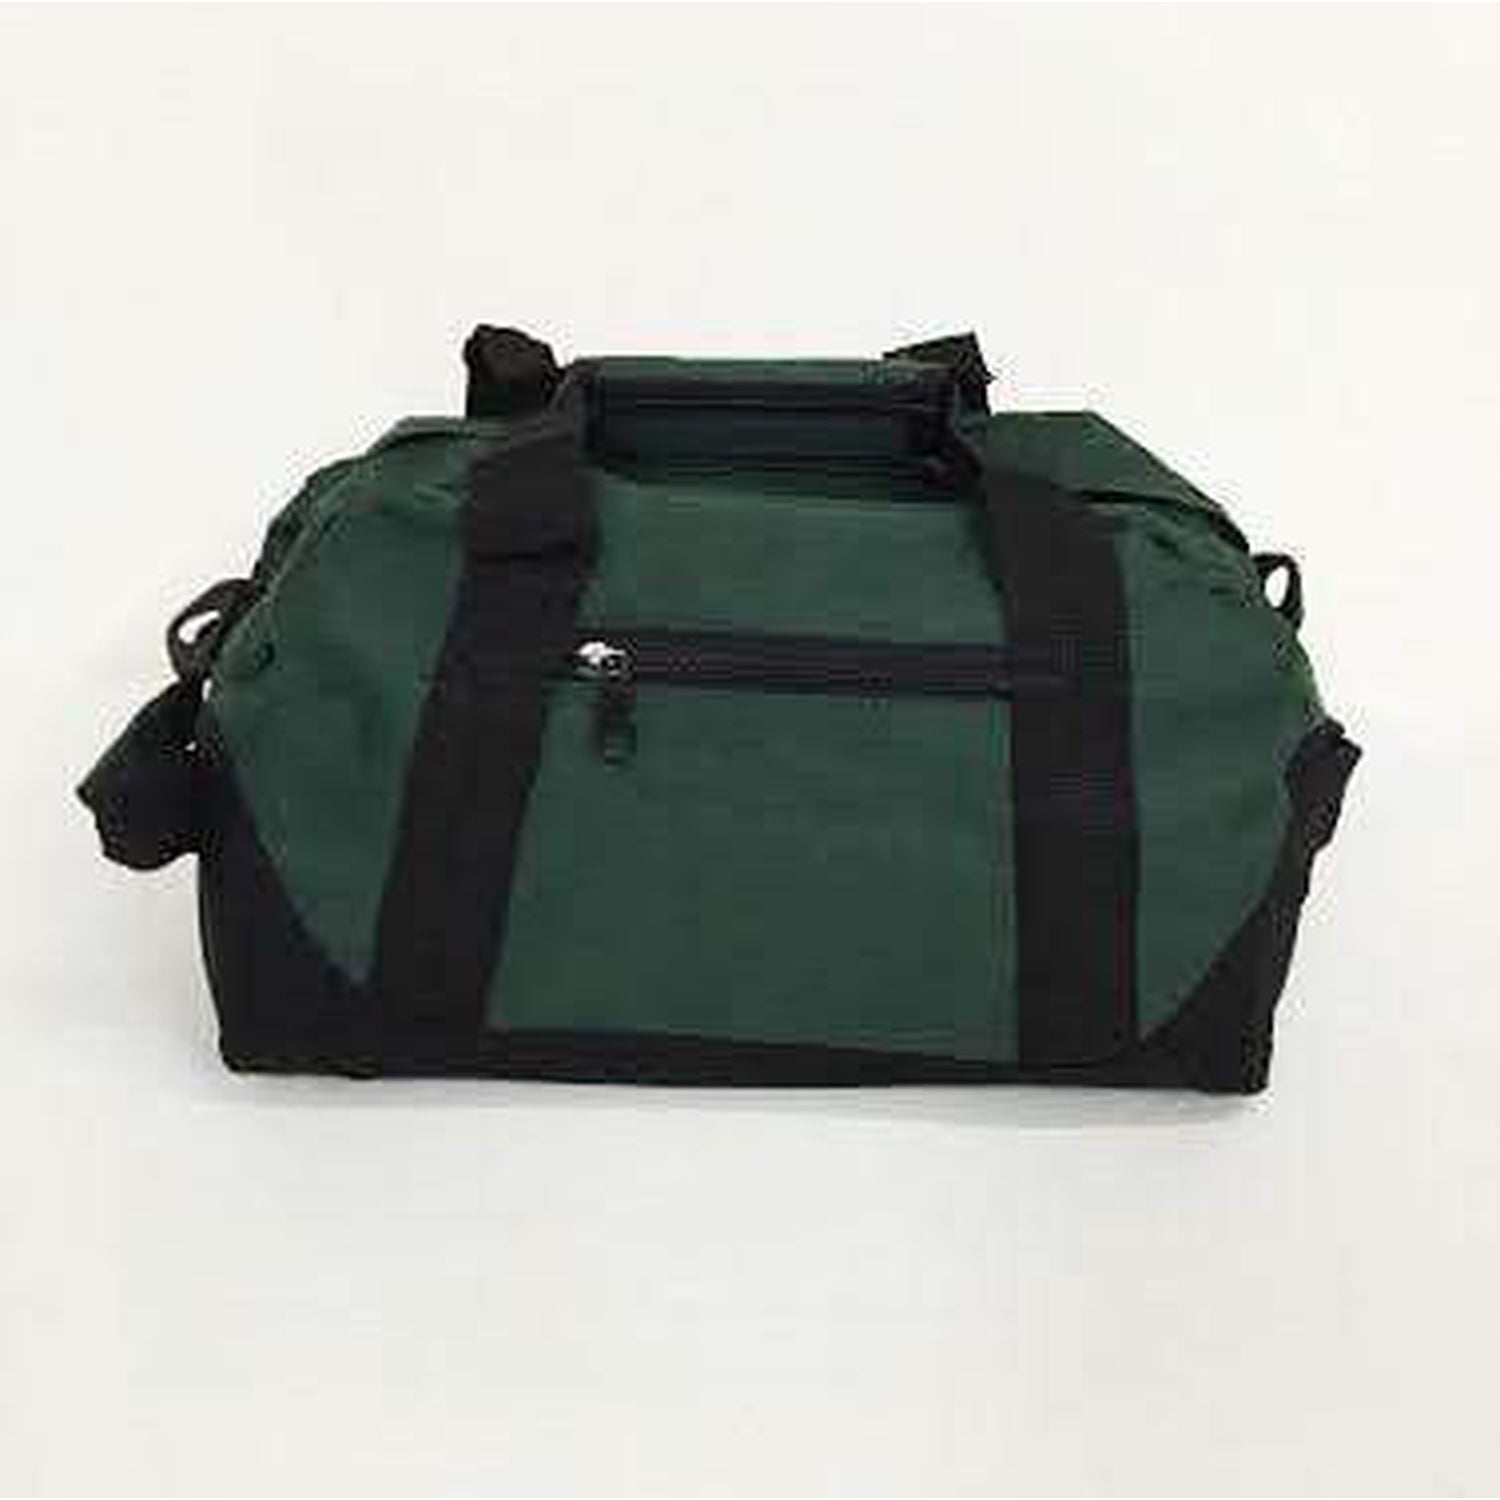 Wholesale Small Duffle Bags, Duffle Bags in Bulk, Custom Duffle Bags – BagzDepot™